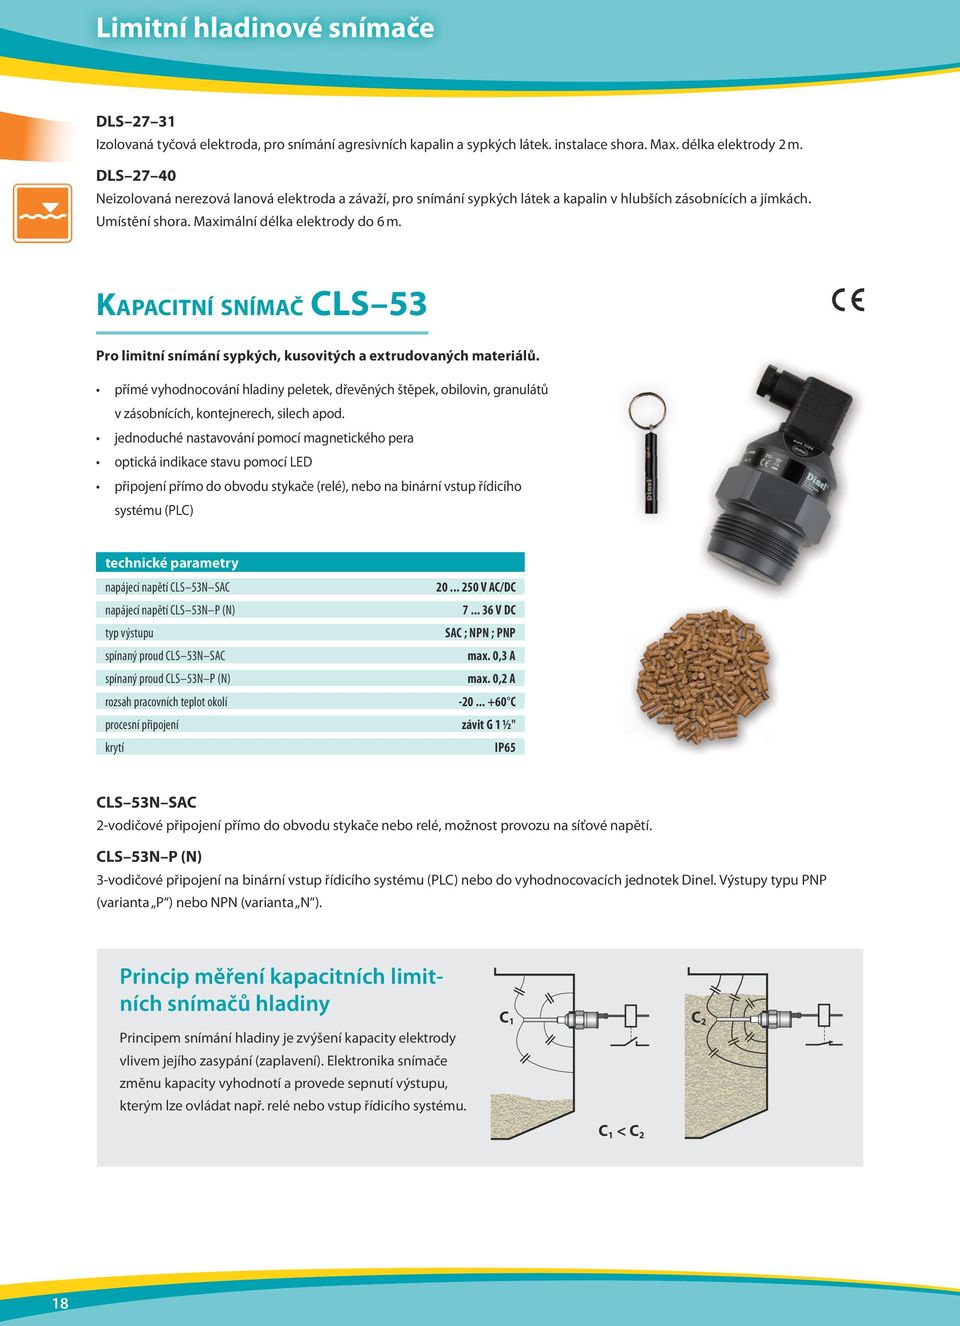 Kapacitní snímač CLS 53 Pro limitní snímání sypkých, kusovitých a extrudovaných materiálů.